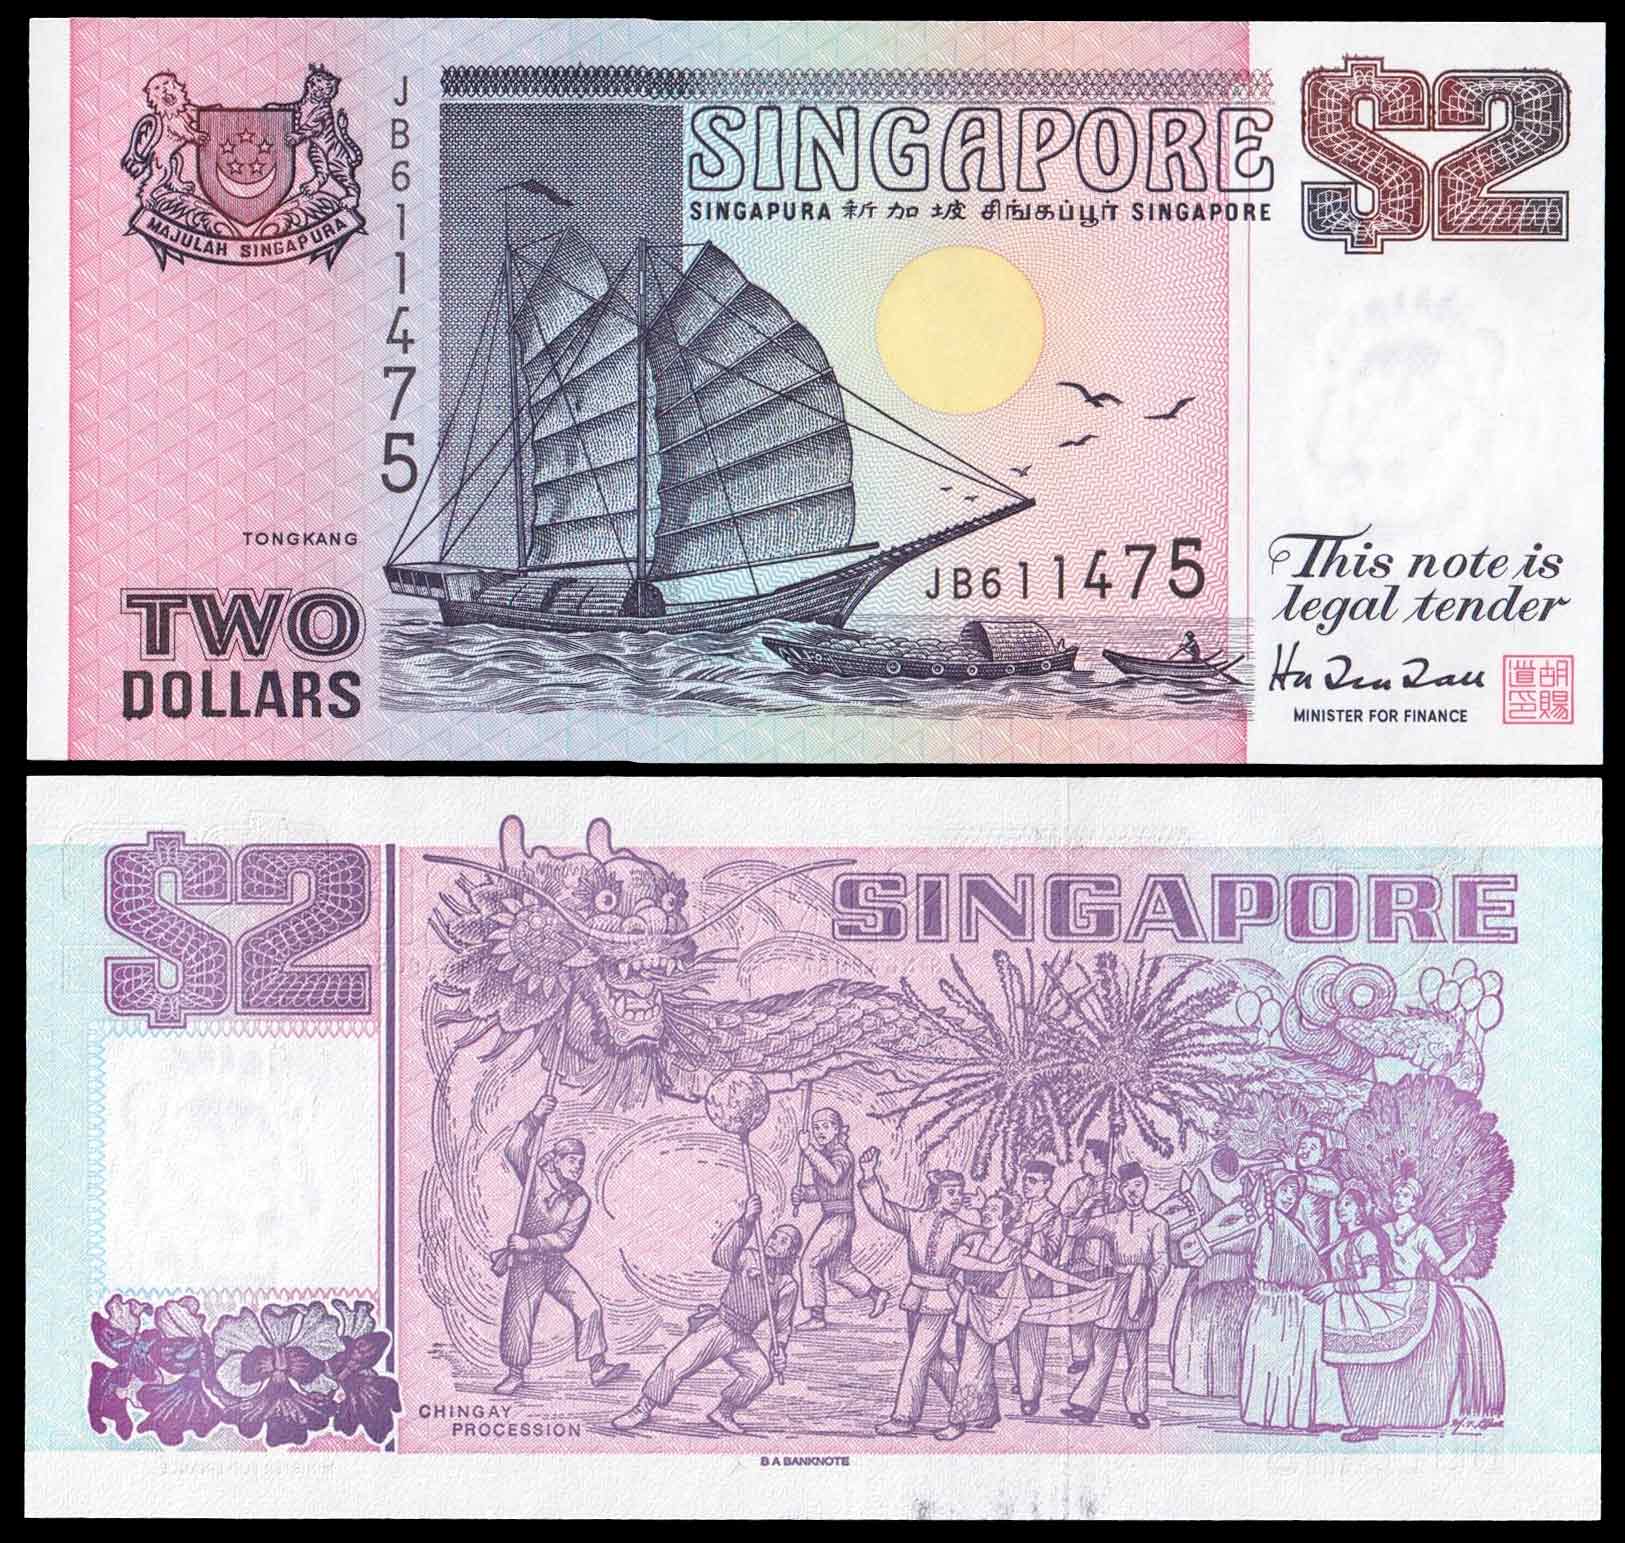 Singapore 2 Dollar 1998 P 37 Fior di Stampa